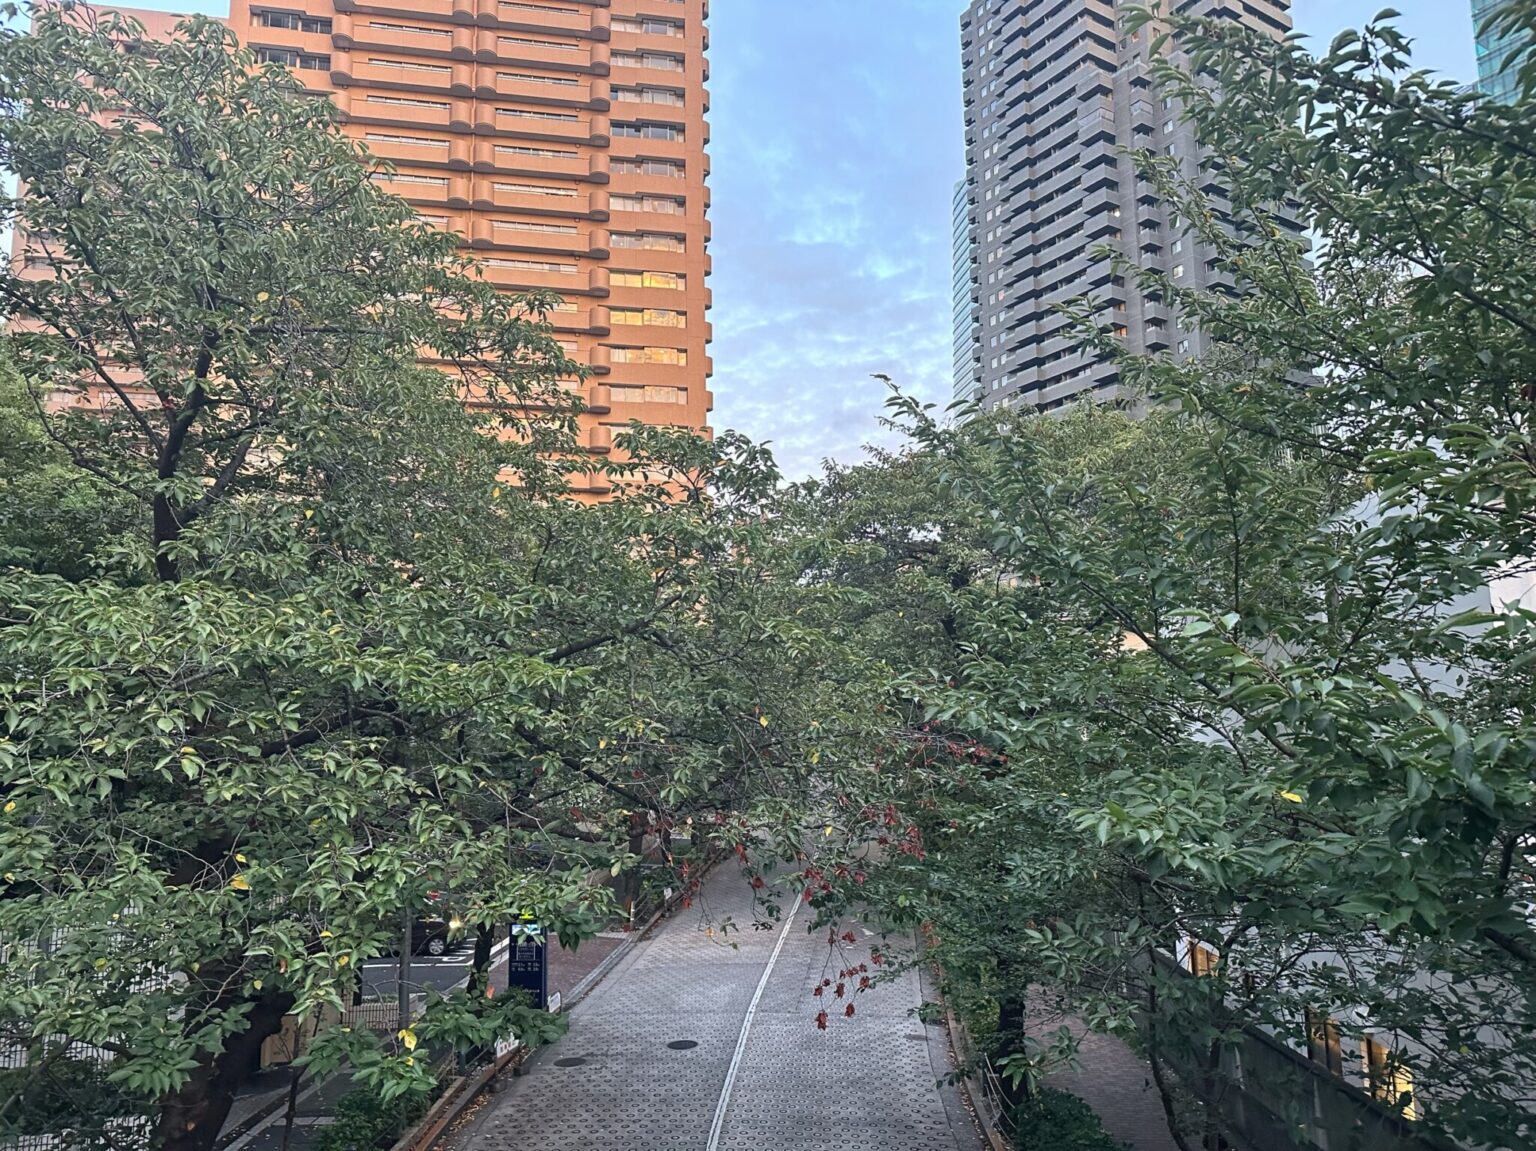 高層ビルの間にグリーンがいっぱいなのは六本木一丁目の特徴的な風景。